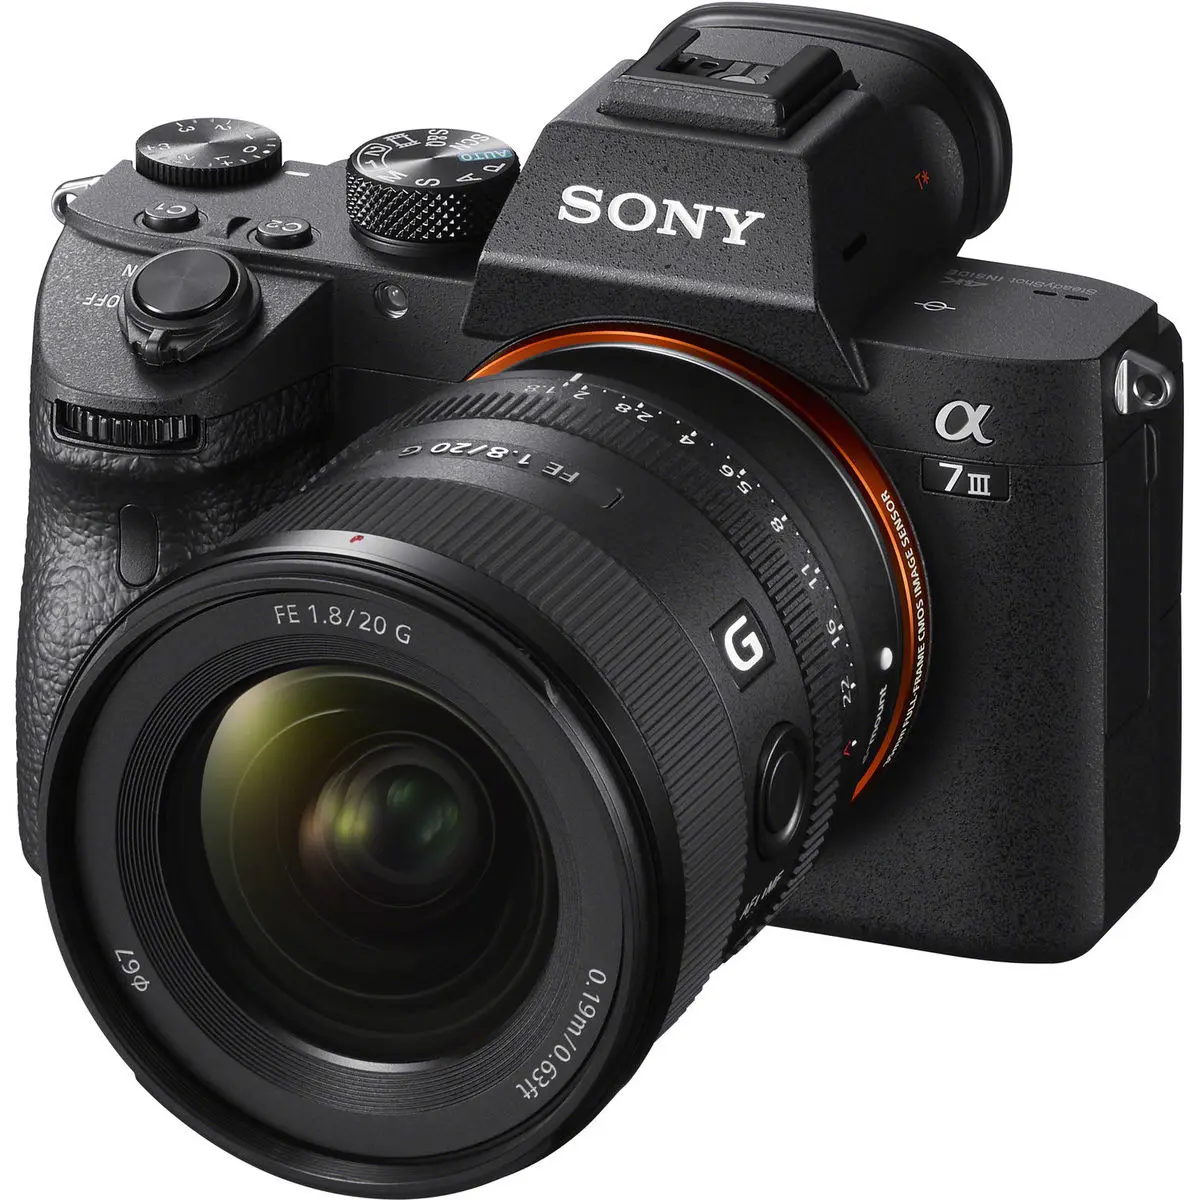 2. Sony FE 20mm f/1.8 G Lens